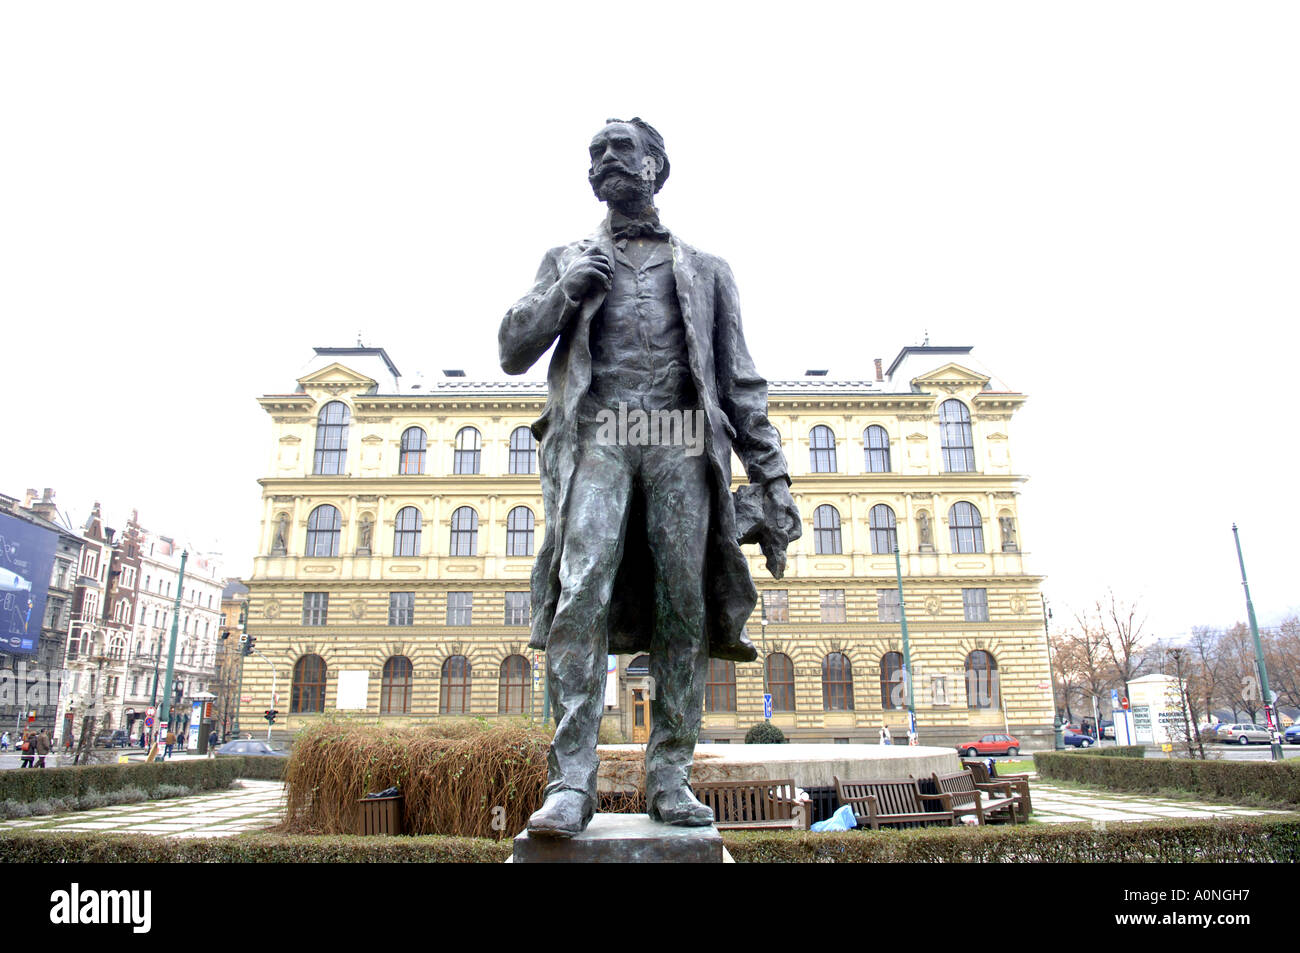 Statue von Antonin Dvorak Tschechische Musiker Stockfoto